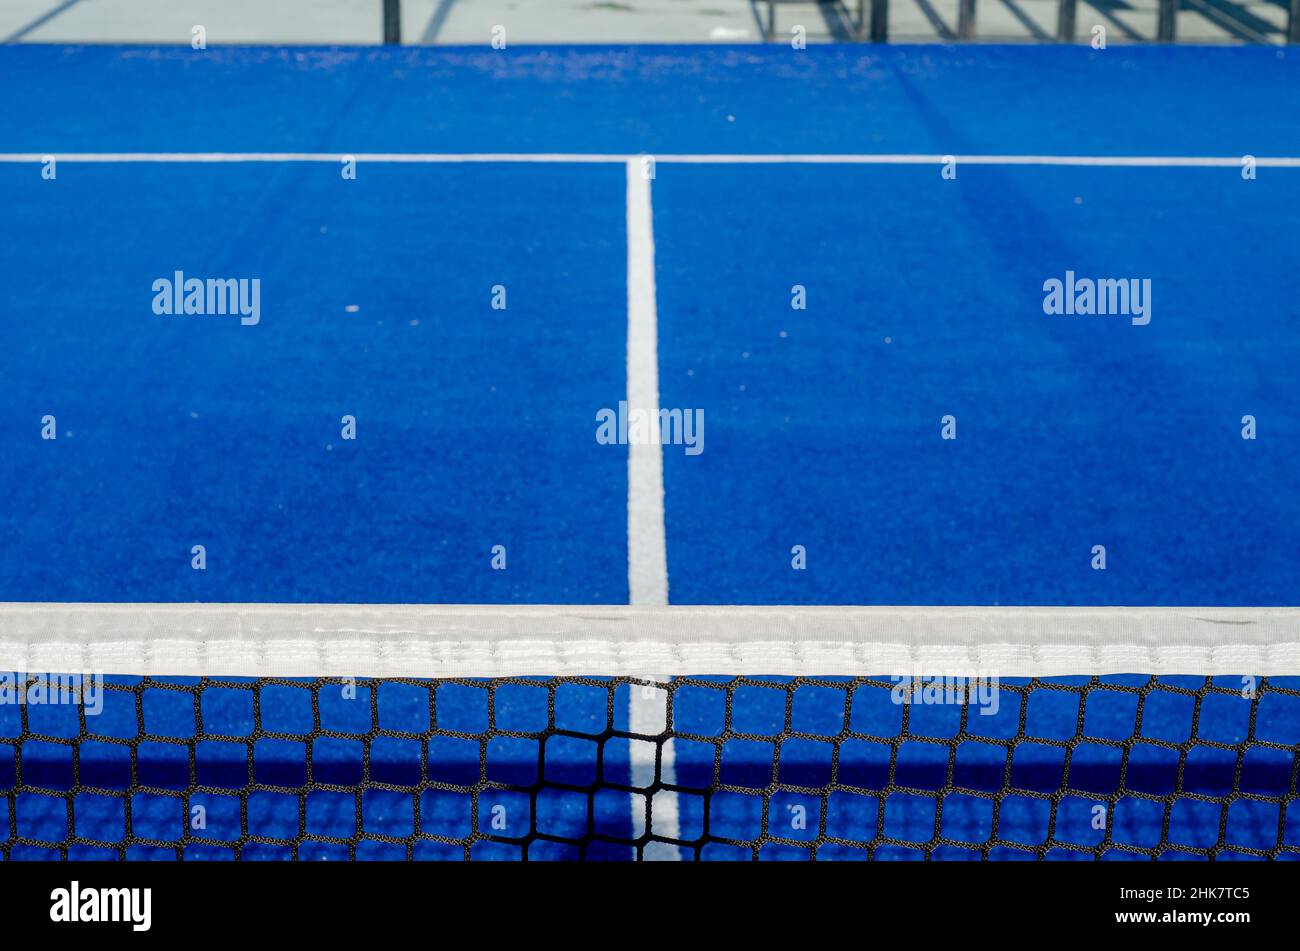 vista de la red y un campo de una pista de pádel azul, concepto de deportes de raqueta Foto de stock